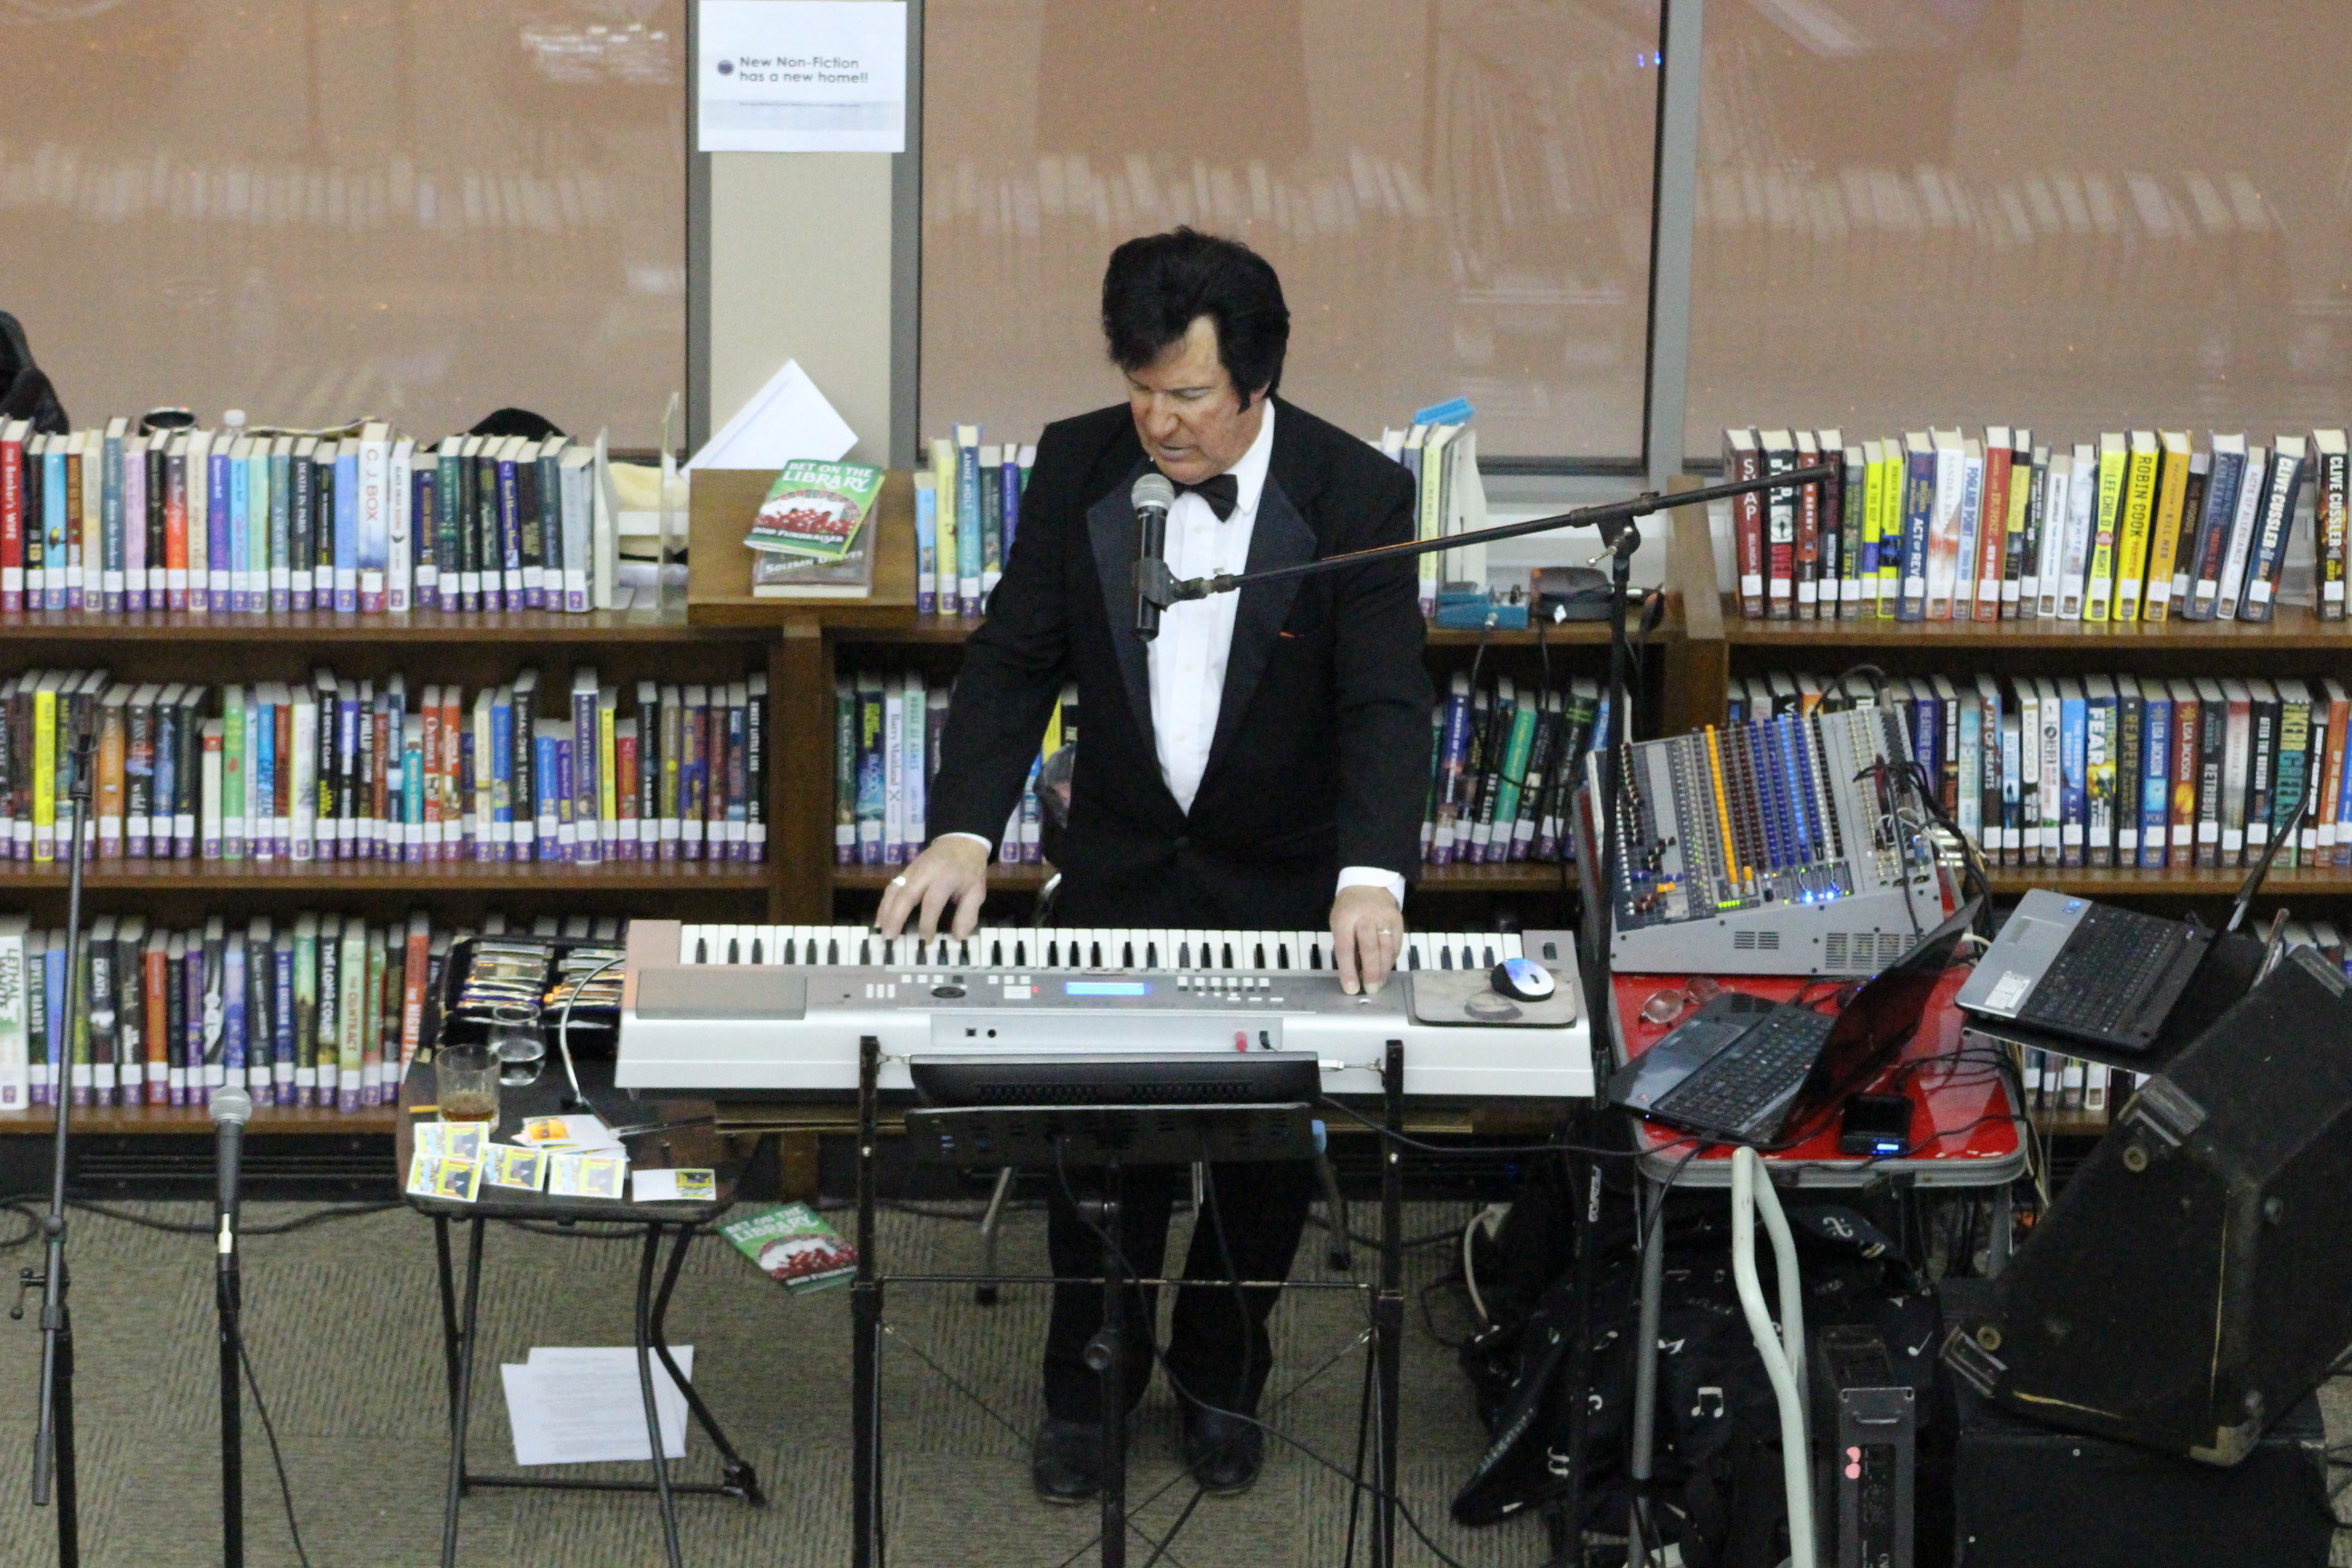 Tuxedo-wearing performer at keyboard